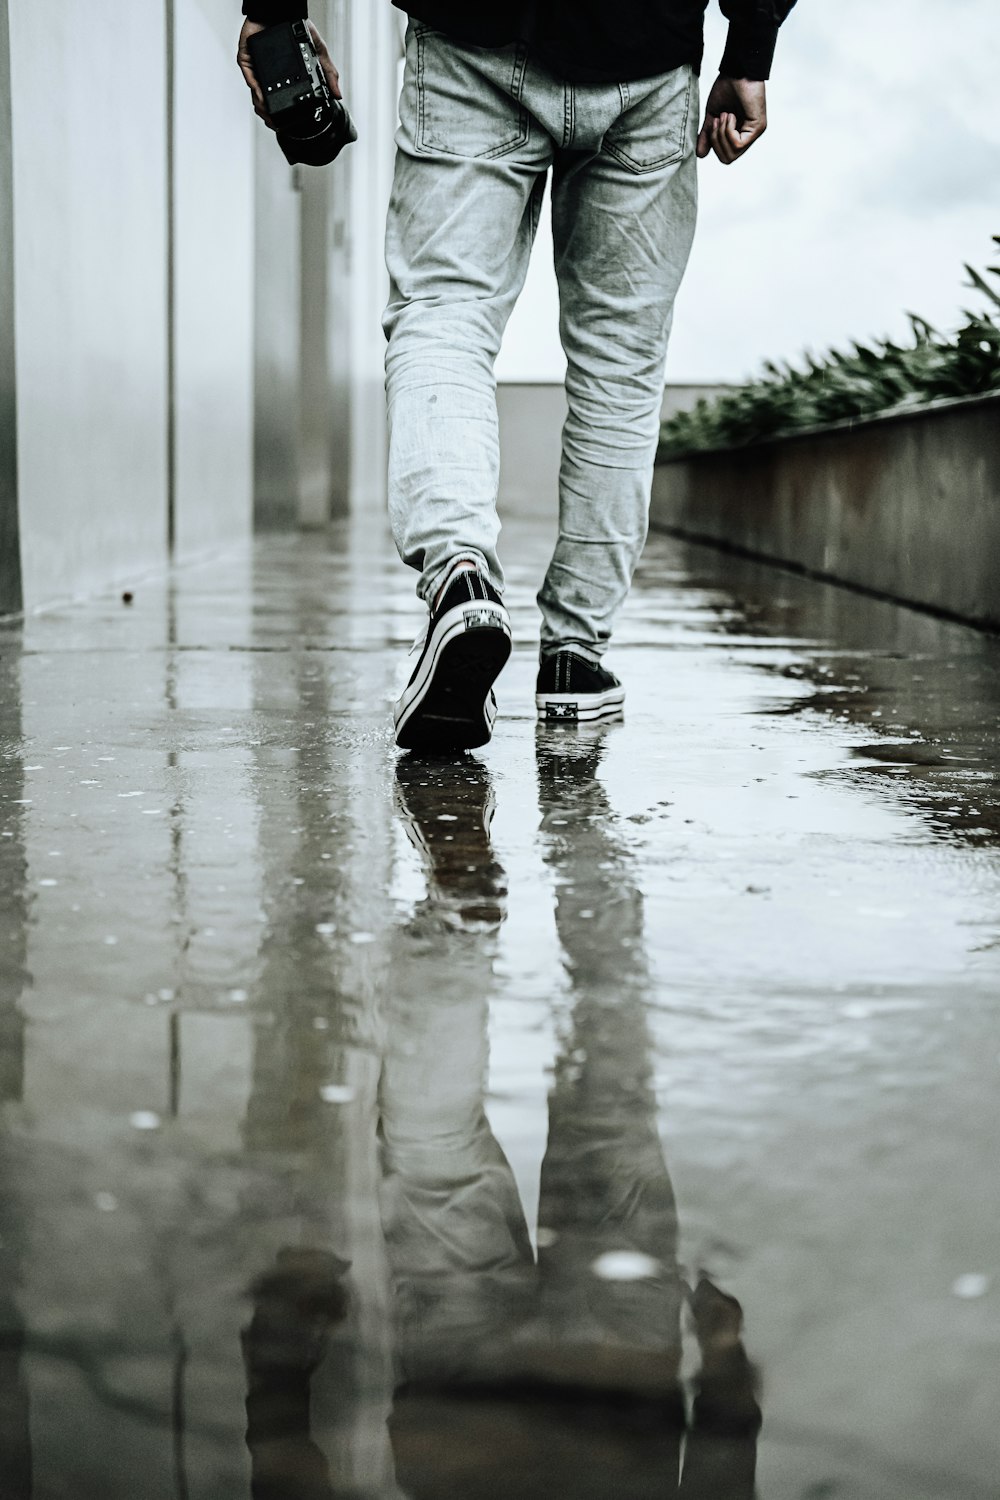 a man walking down a wet sidewalk holding an umbrella